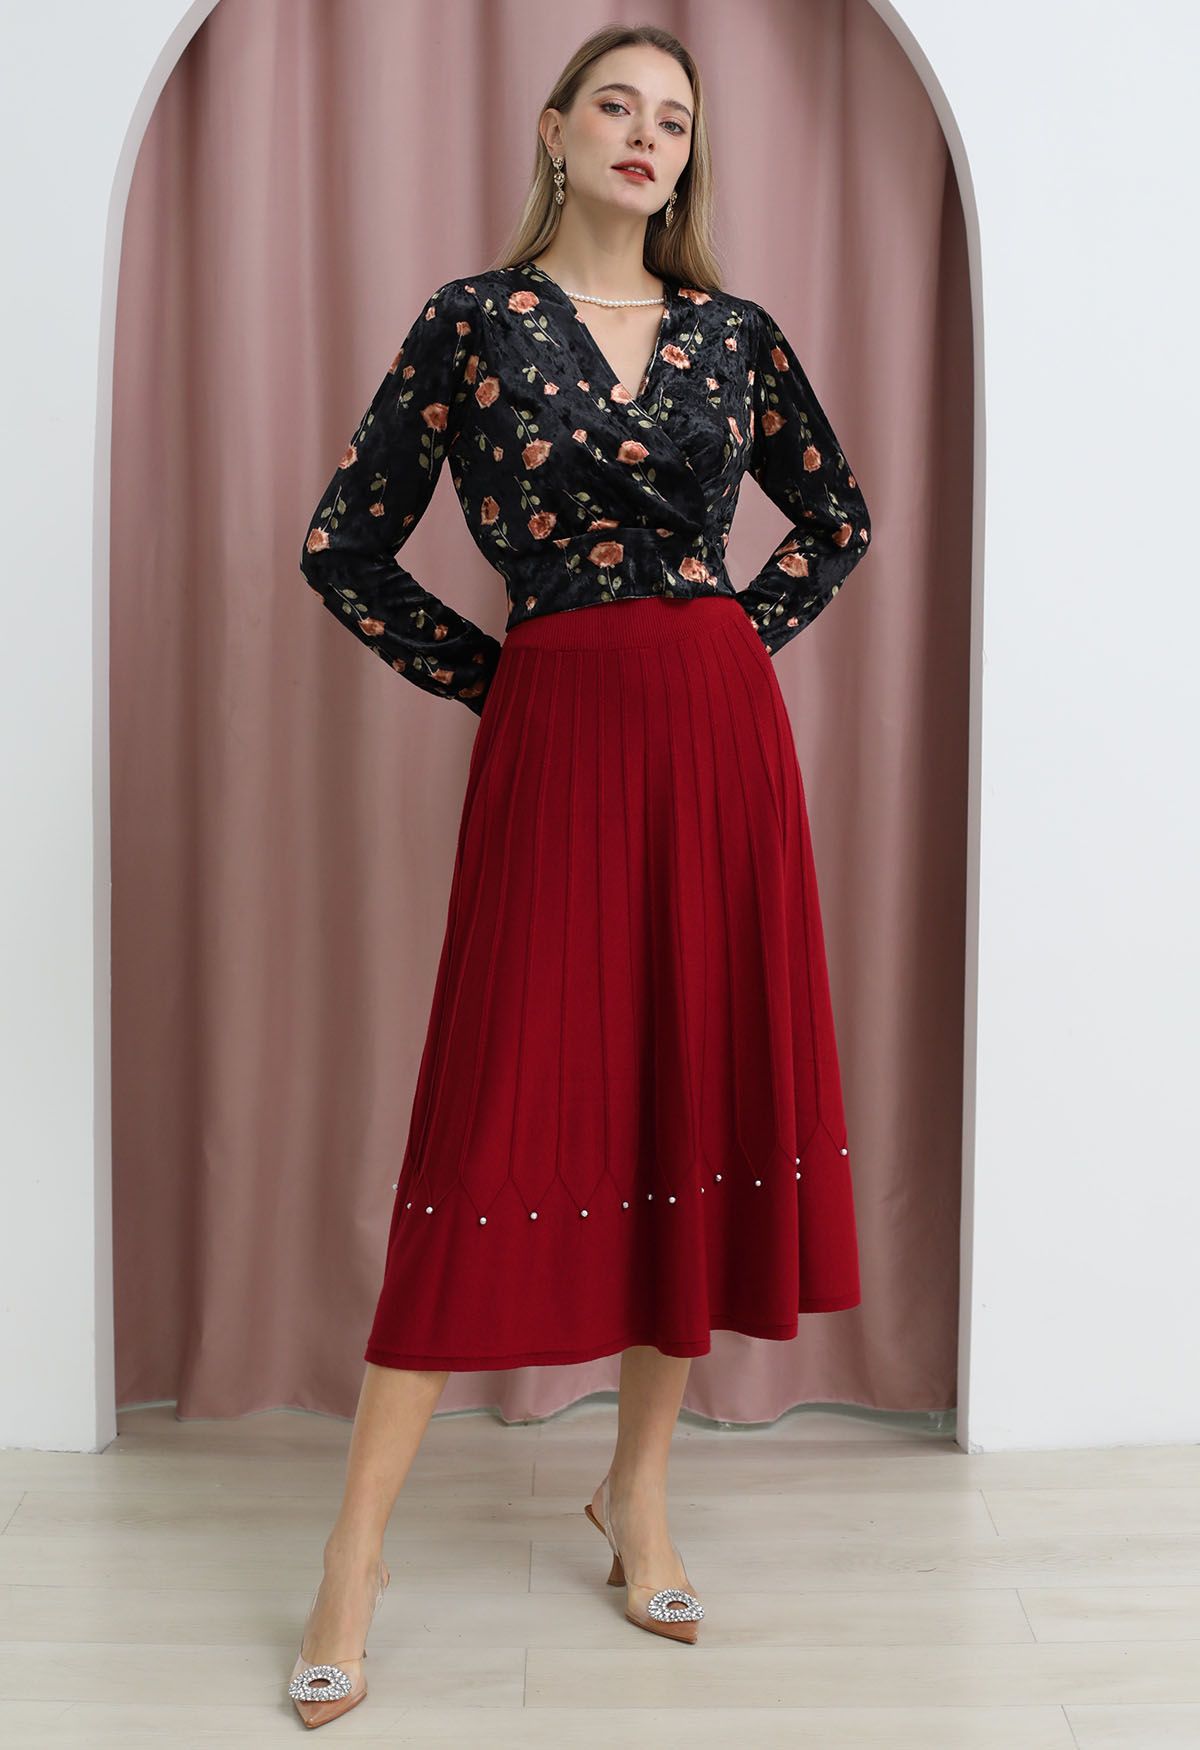 Falda midi de punto con costuras adornadas con cuentas plateadas en rojo